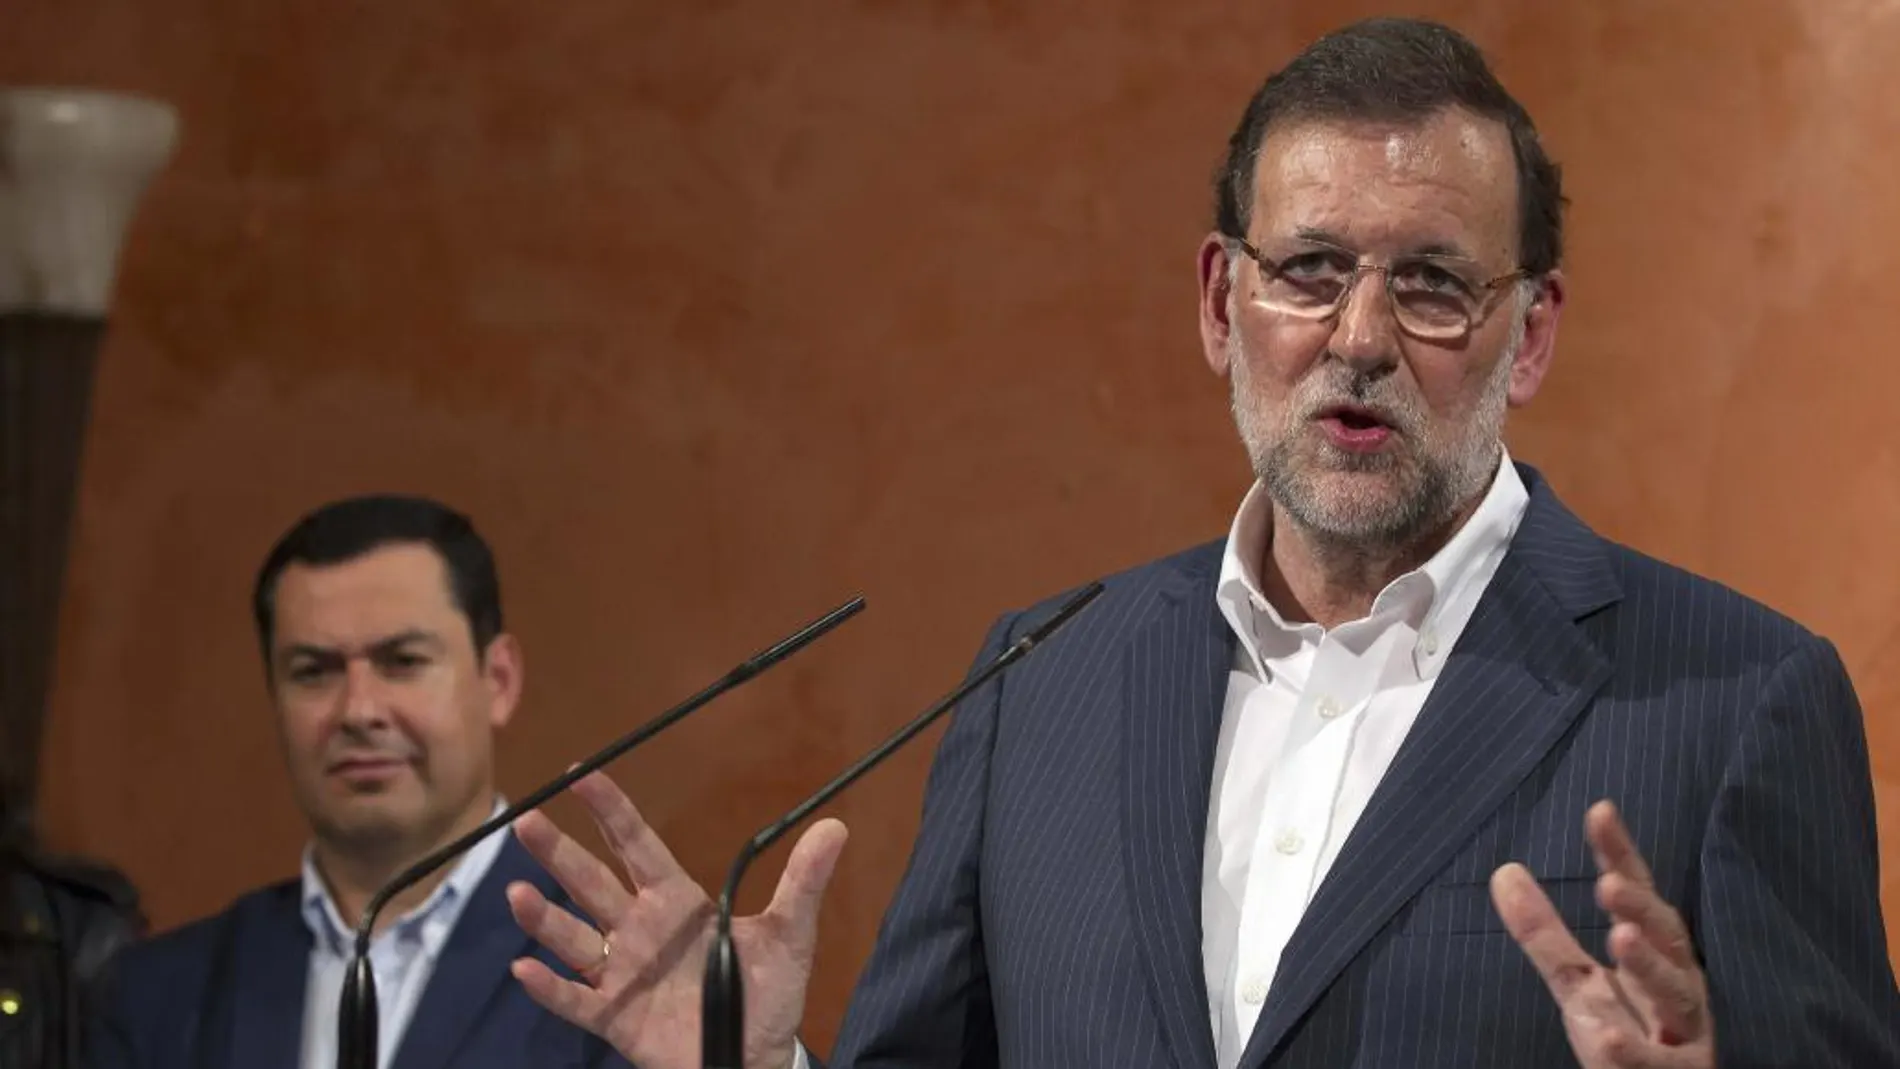 El presidente del Gobierno y del Partido Popular, Mariano Rajoy, que visitó hoy la localidad de La Palma de Condado (Huelva), durante su comparecencia ante los medios de comunicación